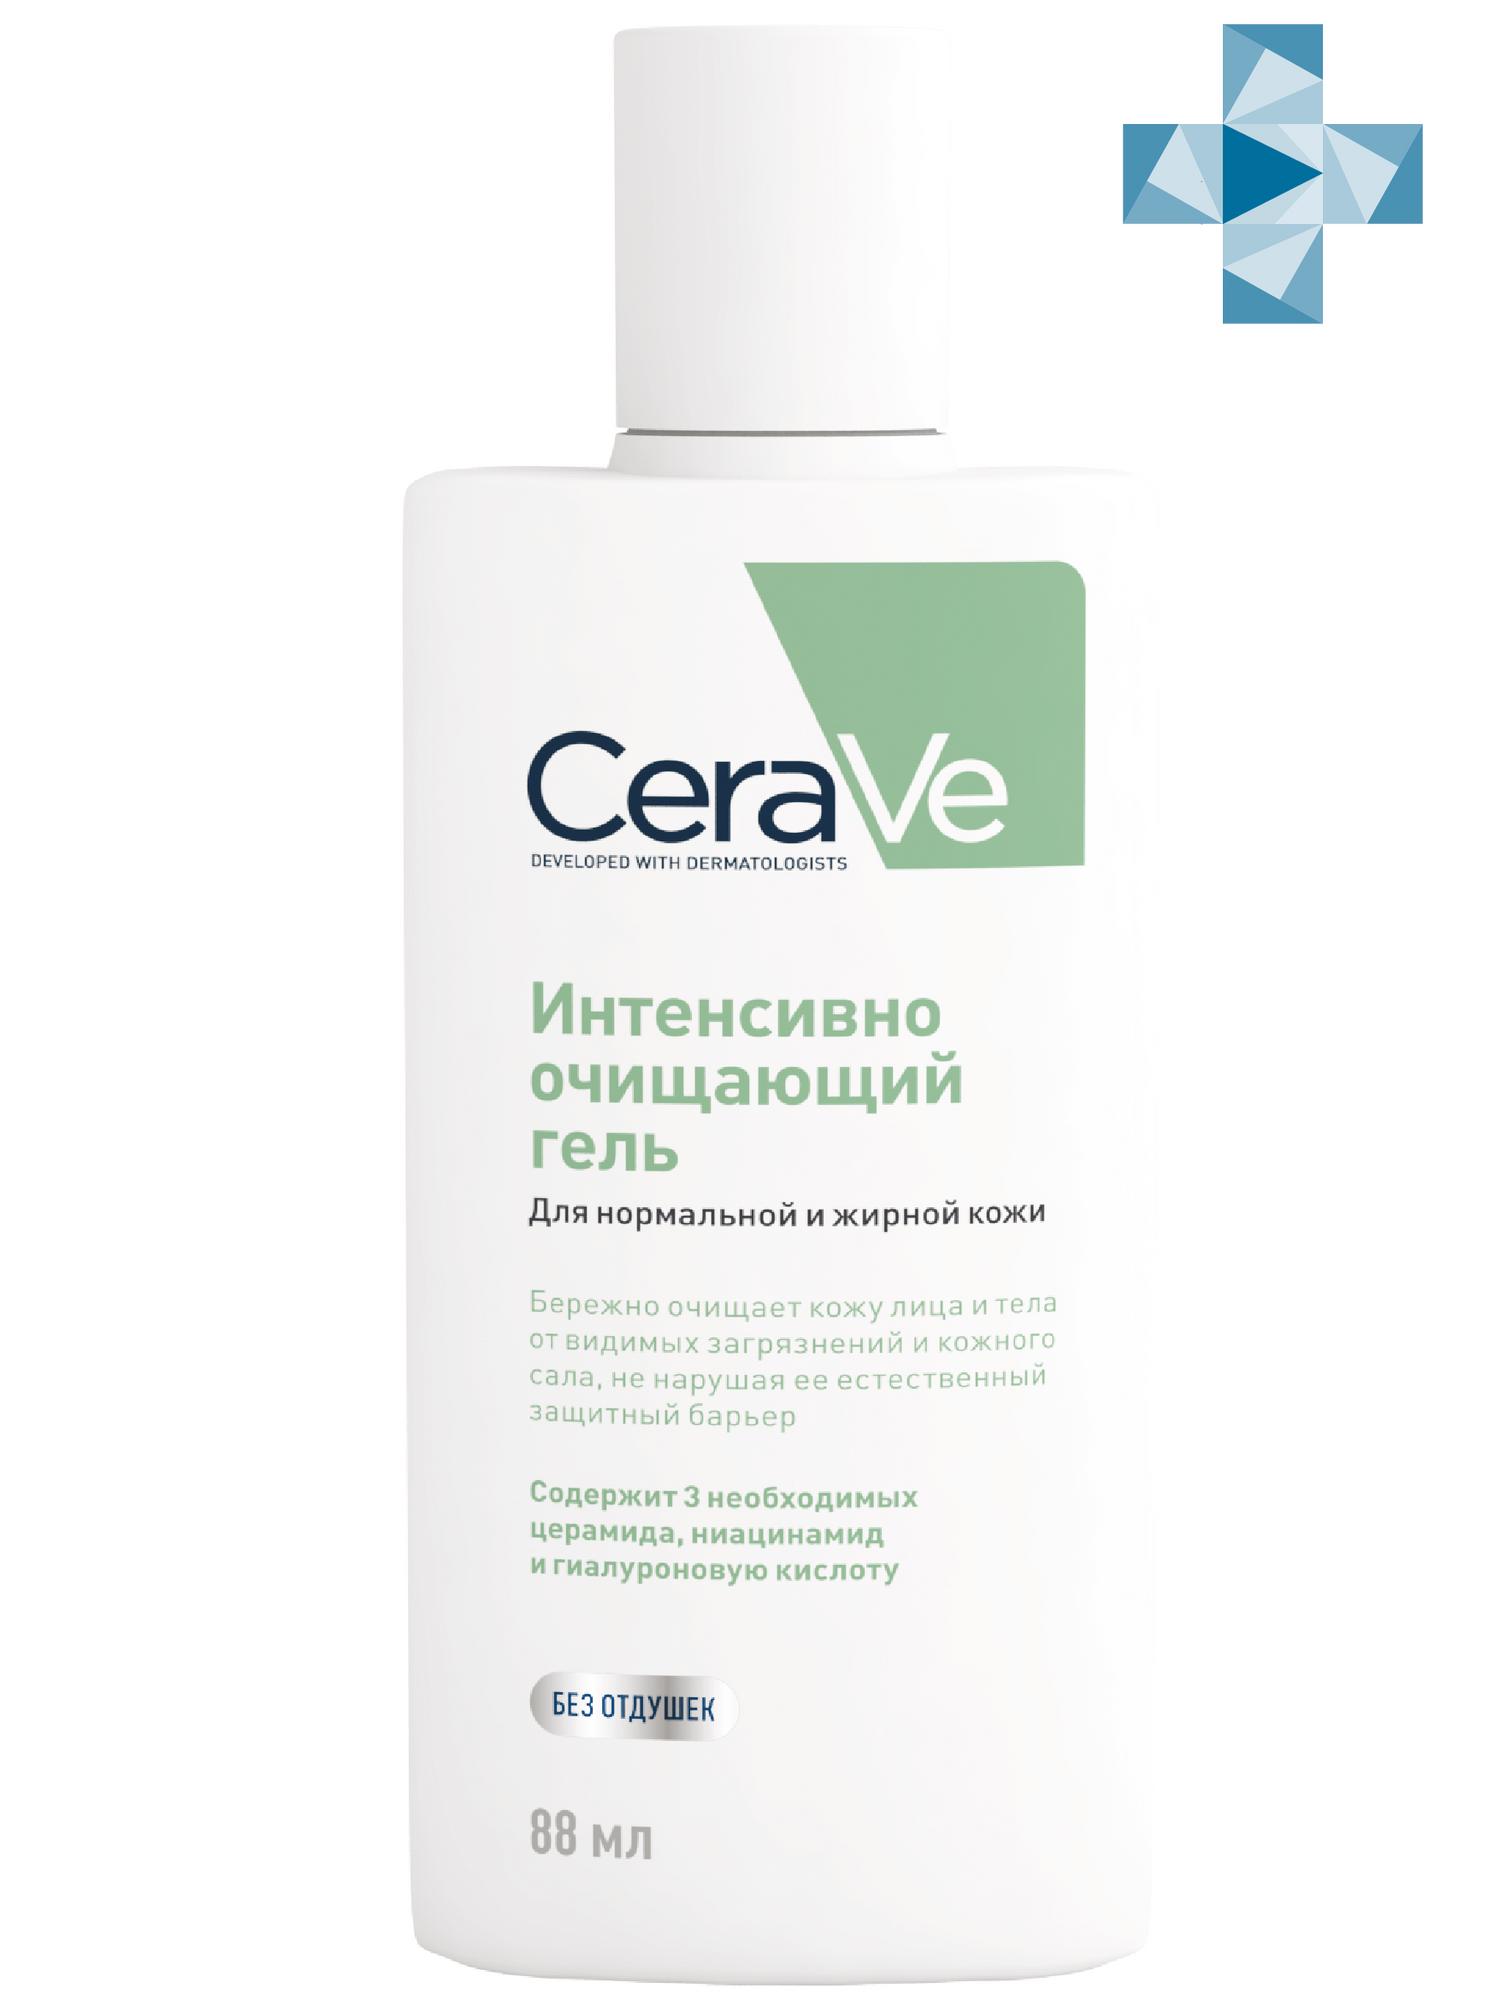 CeraVe Очищающий гель для нормальной и жирной кожи лица и тела, 88 мл (CeraVe, Очищение кожи)